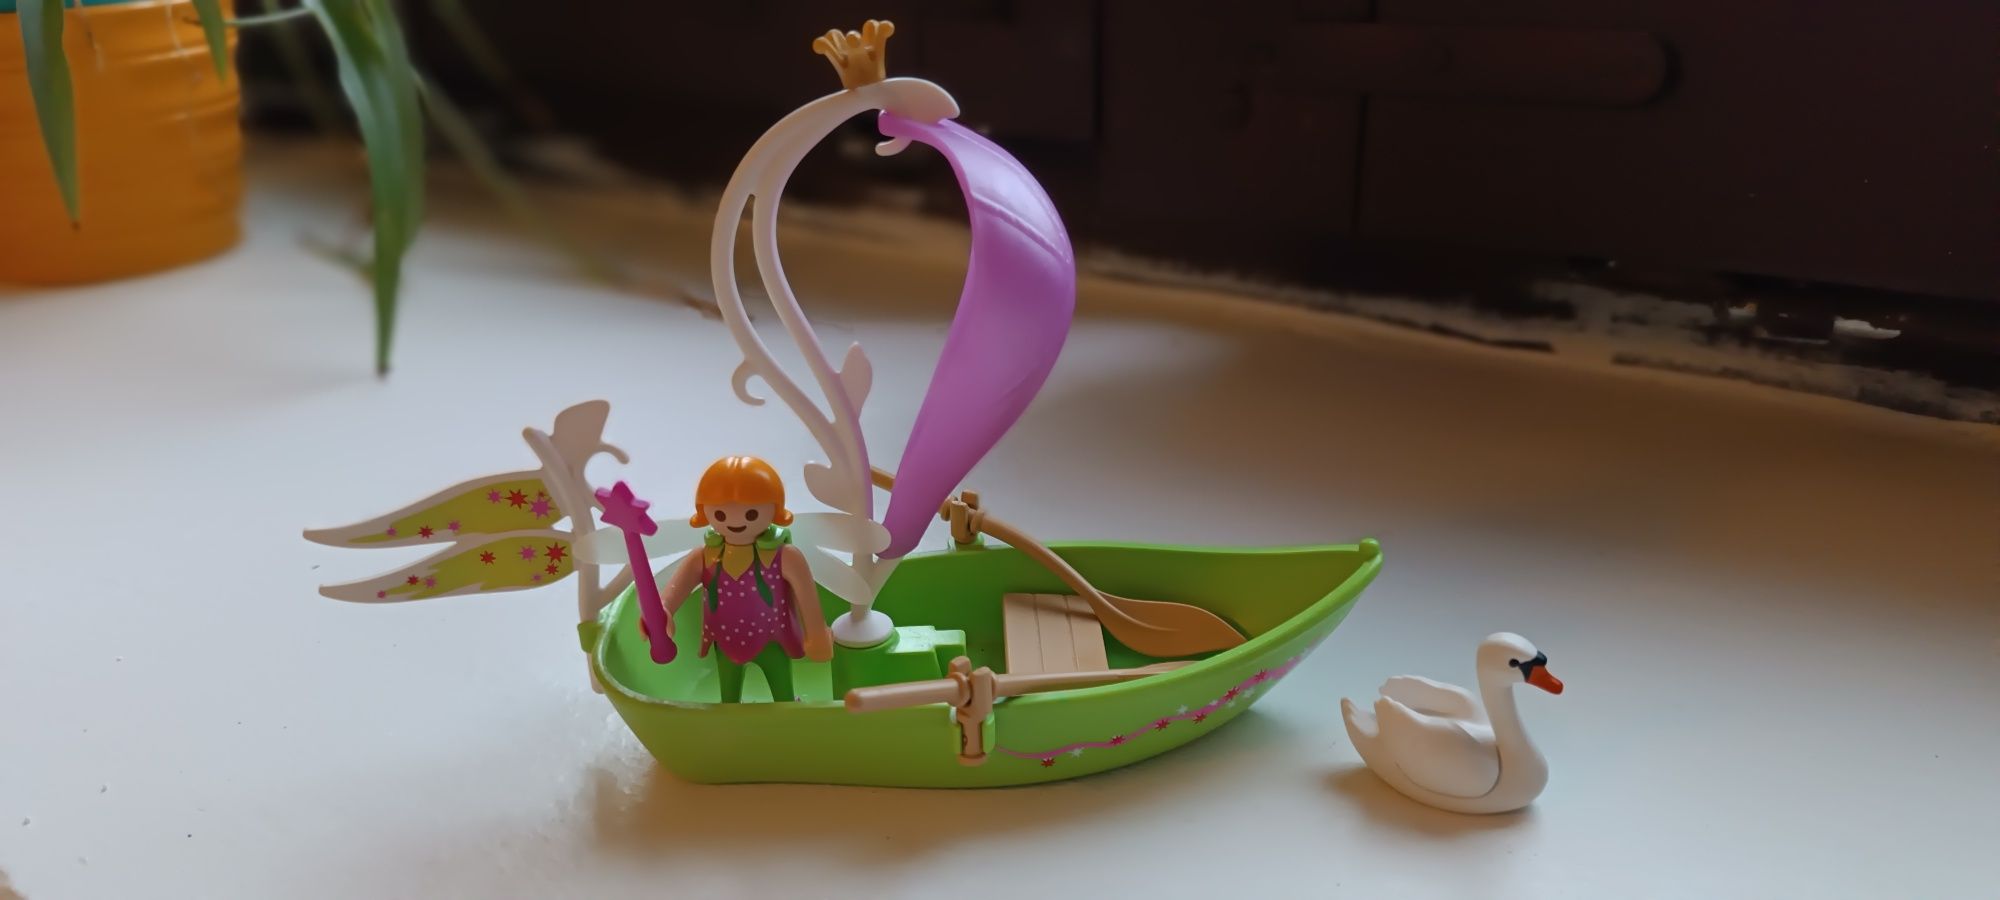 Figurka wróżki z łódką